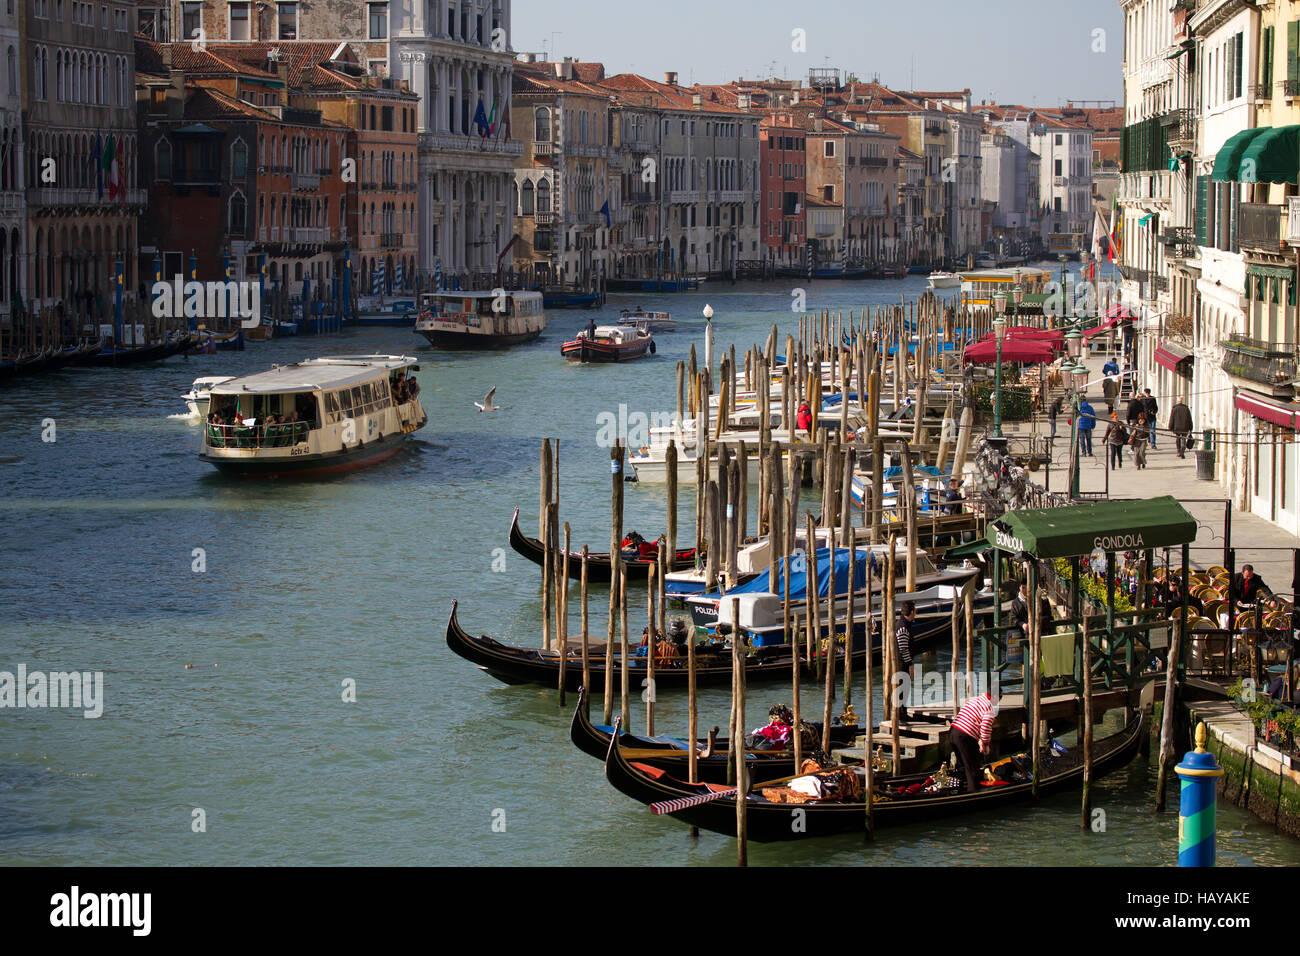 Canal Grande 001. Venice. Italy Stock Photo